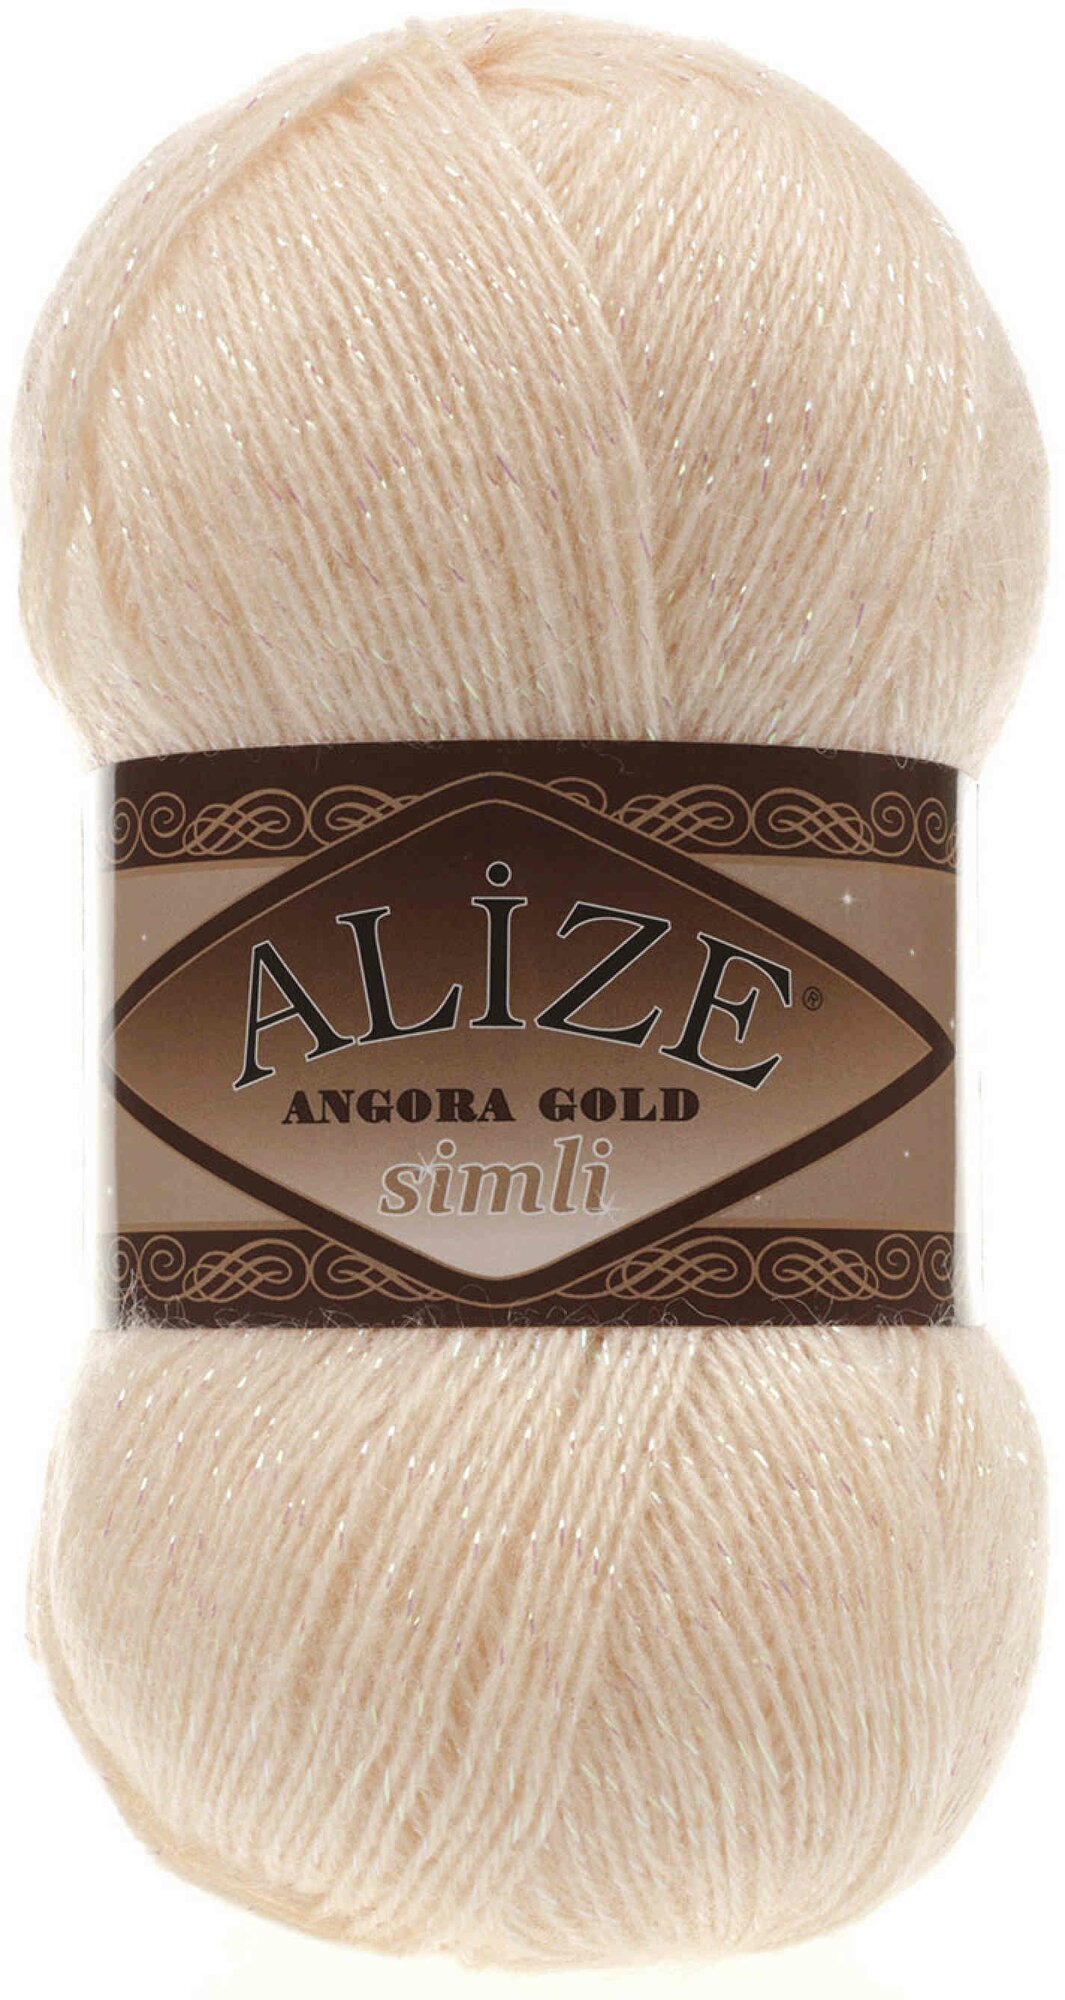 Пряжа Alize Angora Gold simli персиковый (681), 75%акрил/20%шерсть/5%метанит, 500м, 100г, 1шт